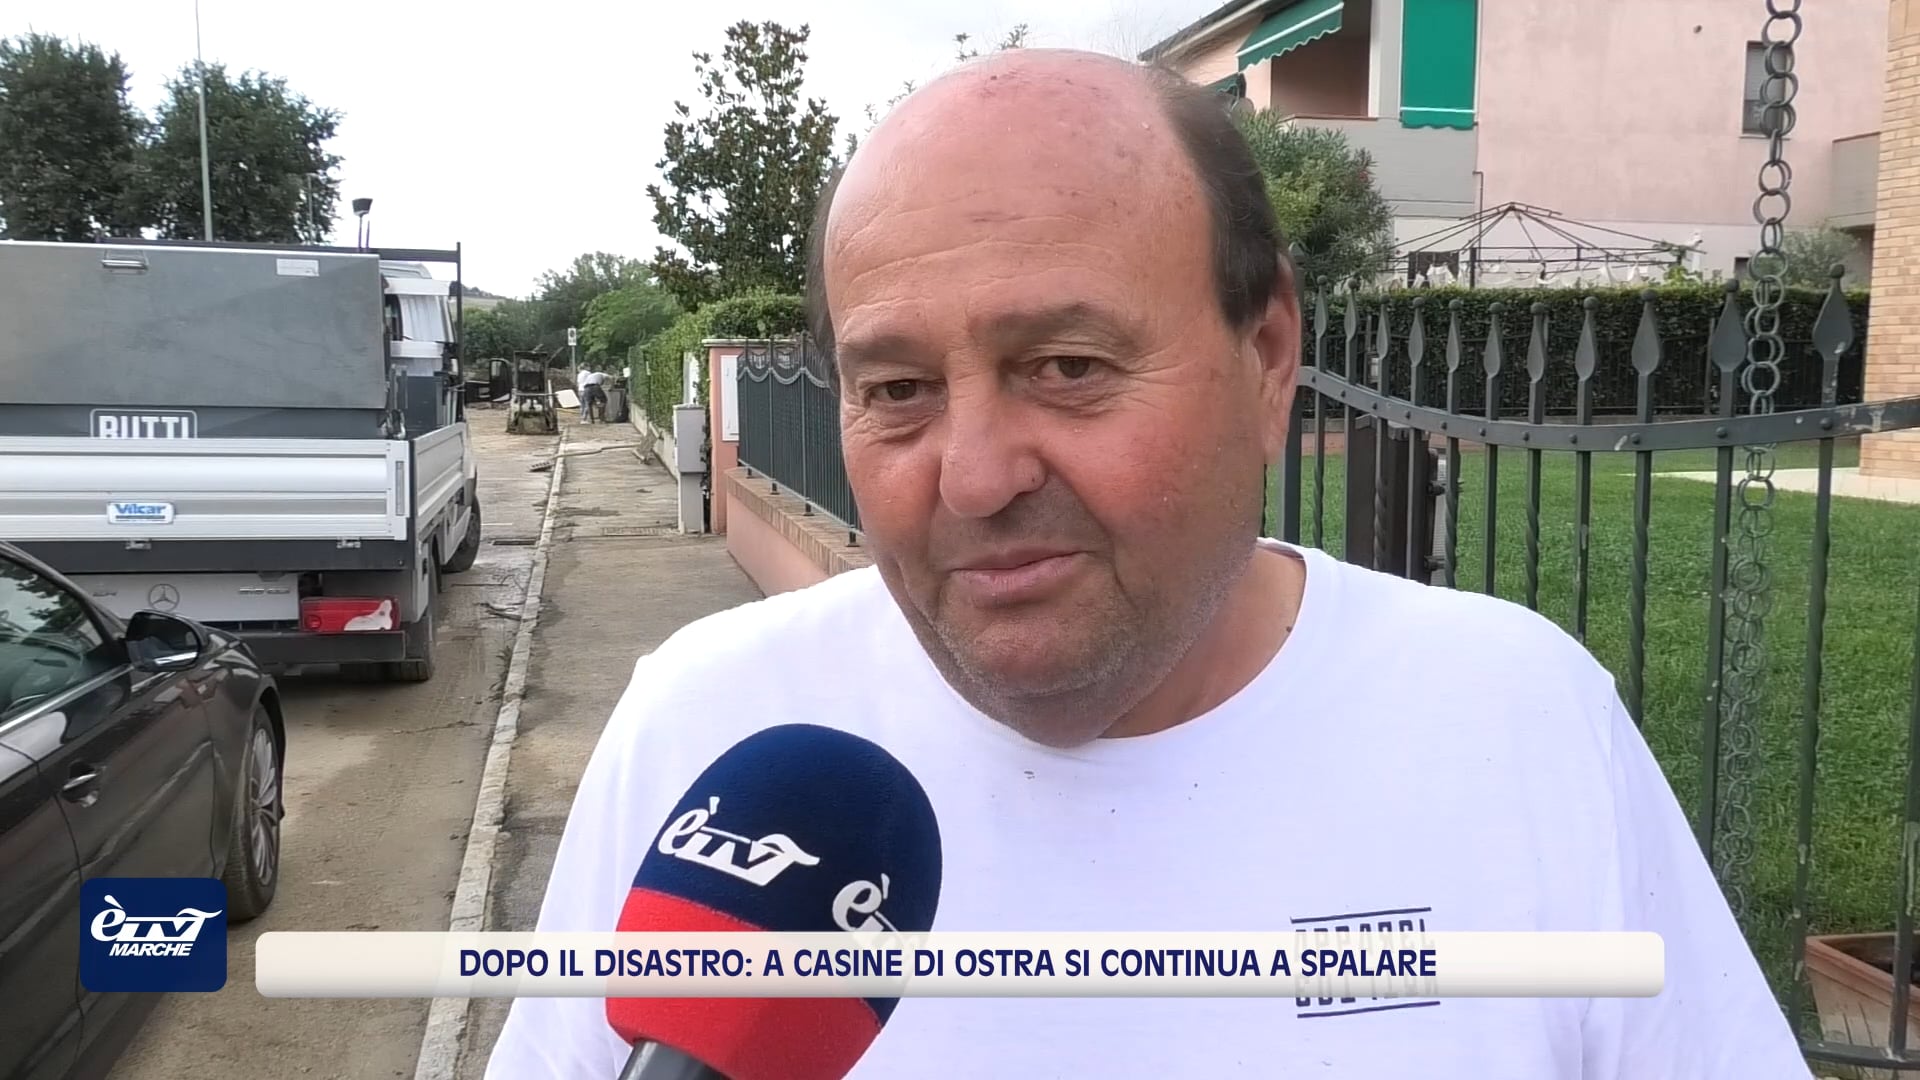 Dopo il disastro a Casine di Ostra si continua a spalare - VIDEO